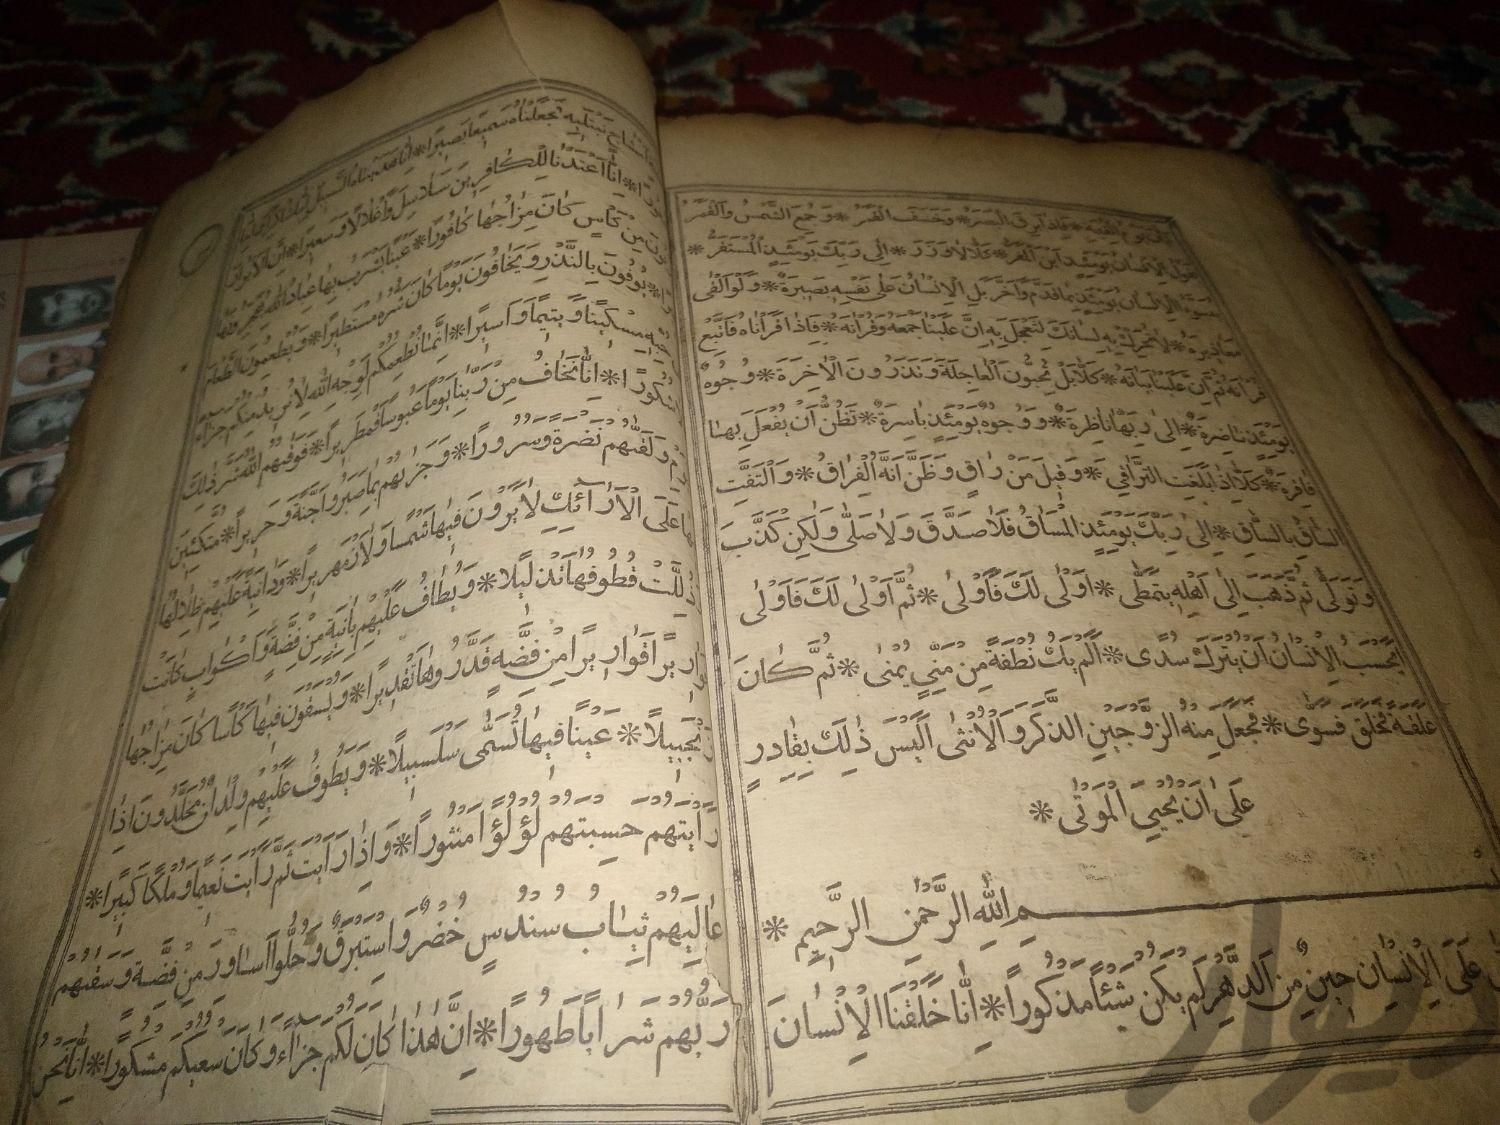 قرآن قدیمی|کتاب و مجله مذهبی|مشهد, شهرک شهید رجایی|دیوار